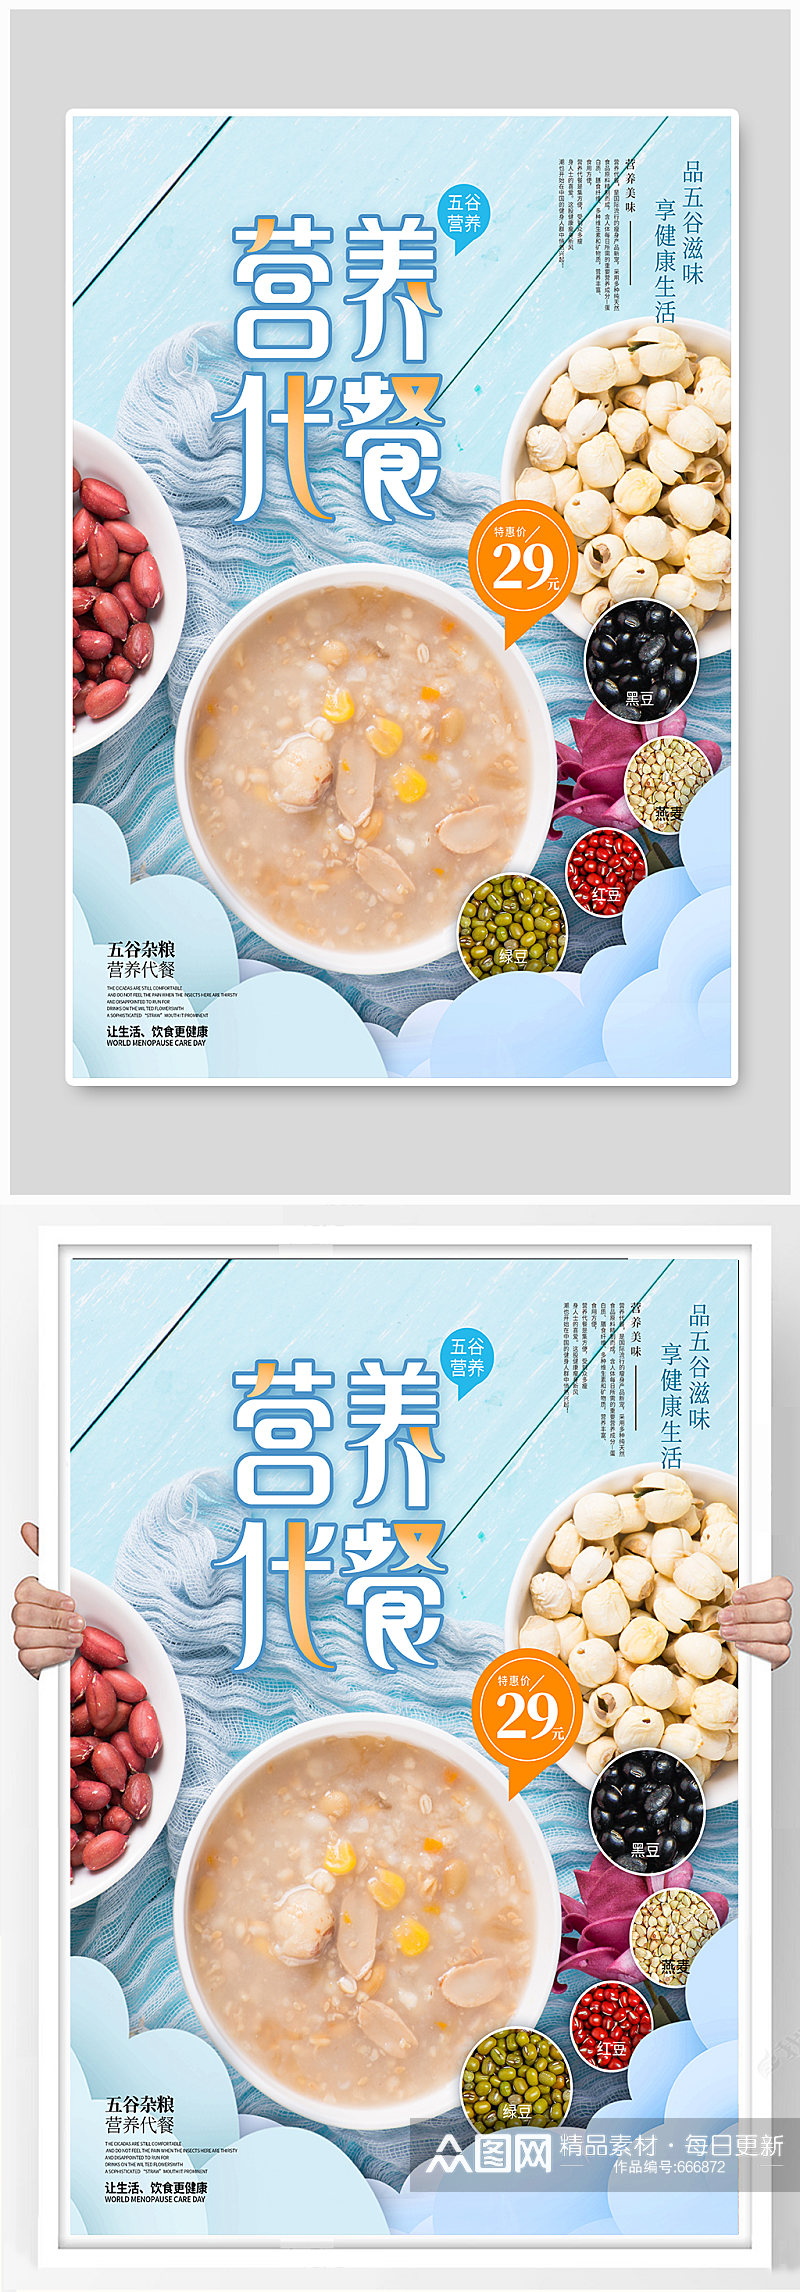 五谷杂粮代餐食品产品宣传促销海报素材